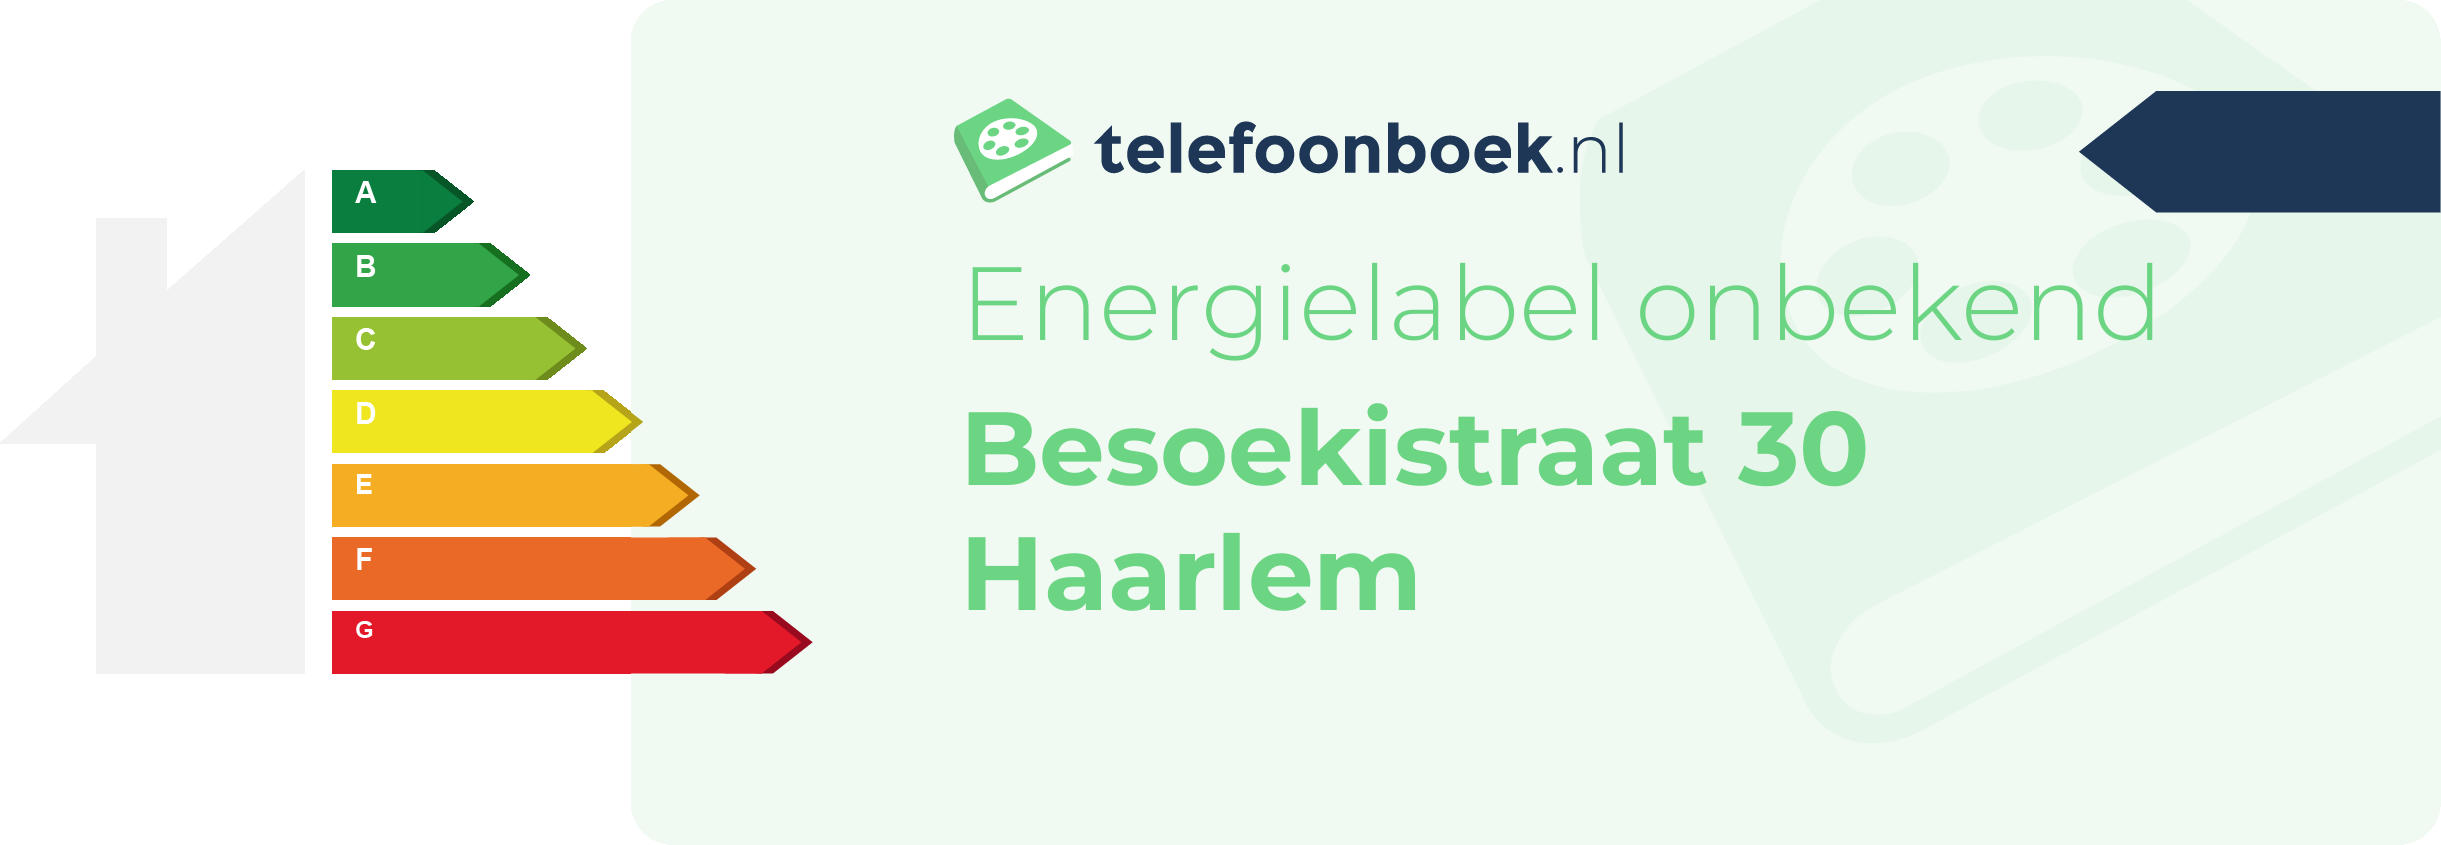 Energielabel Besoekistraat 30 Haarlem